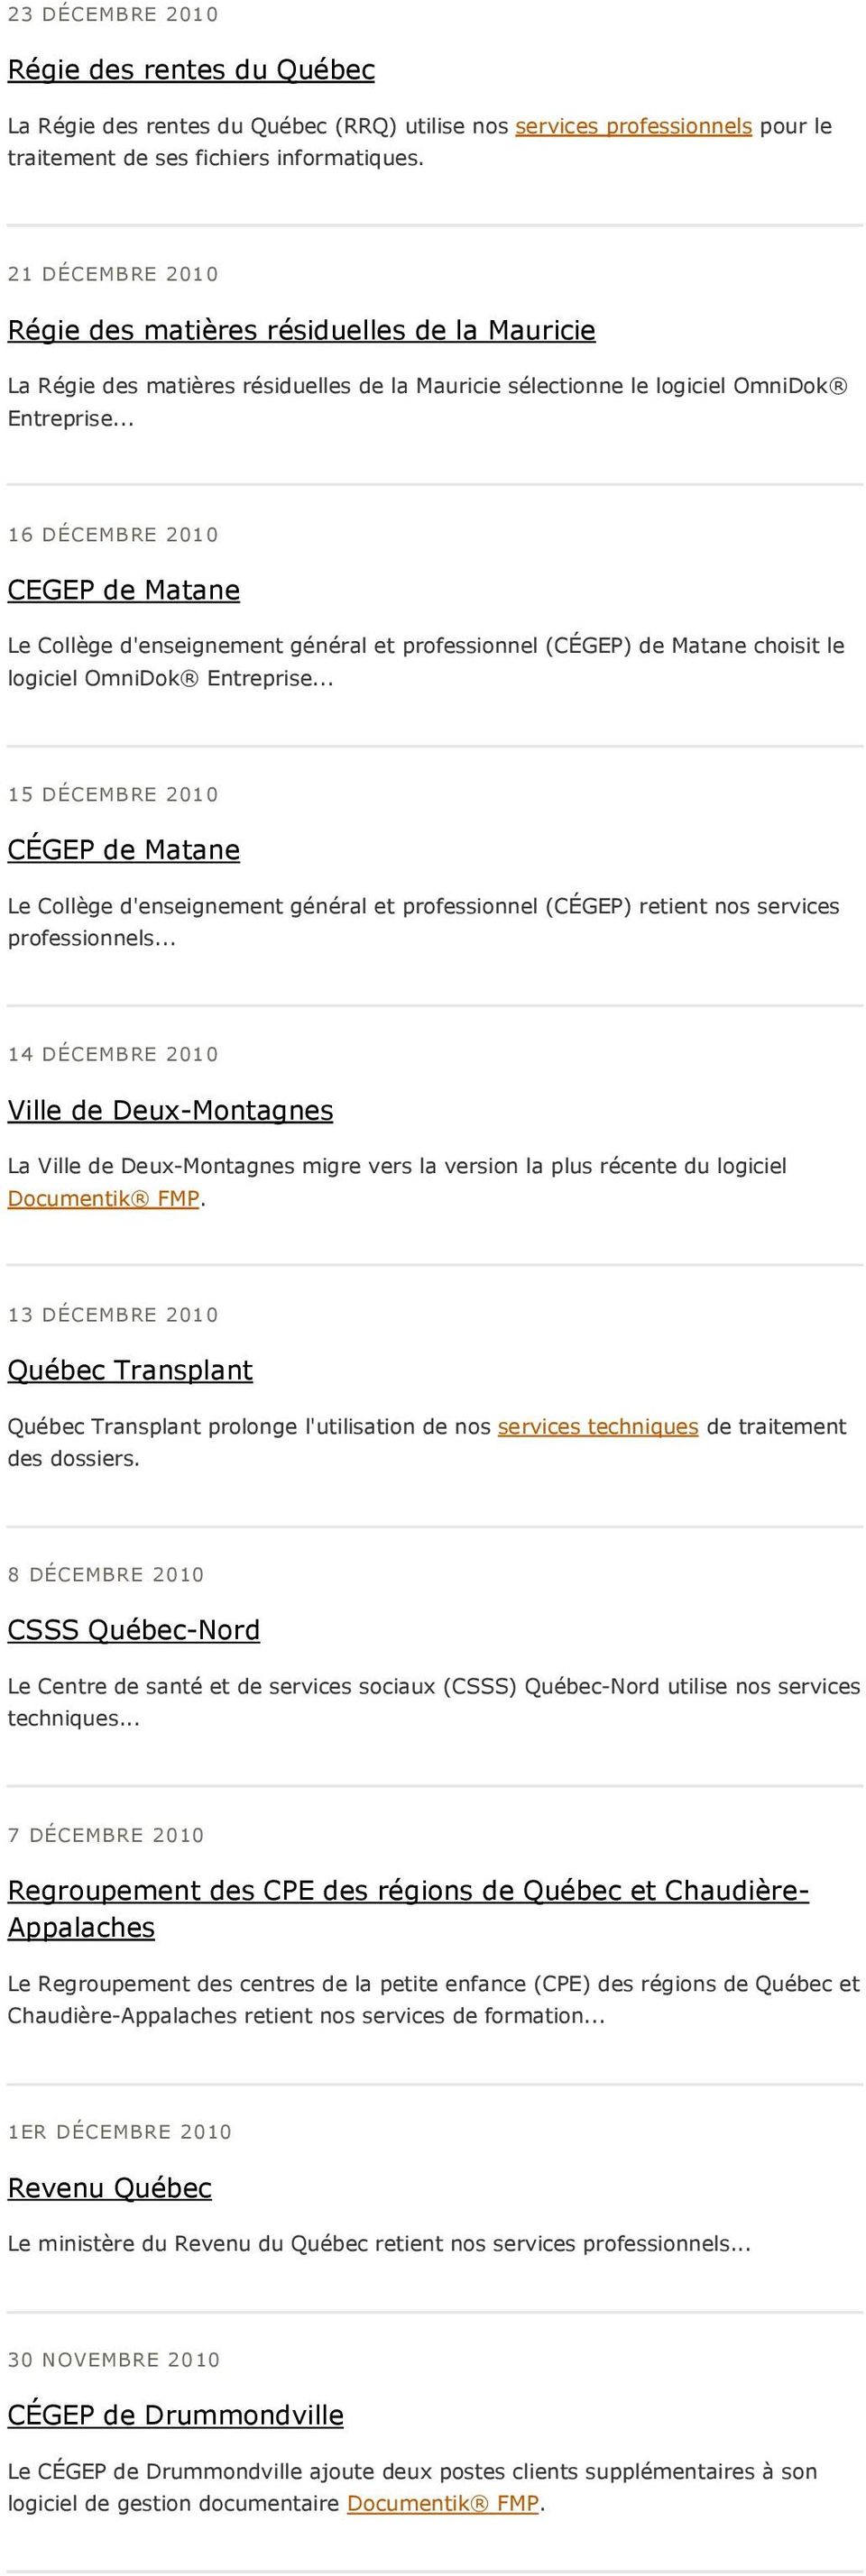 .. 16 DÉCEMBRE 2010 CEGEP de Matane Le Collège d'enseignement général et professionnel (CÉGEP) de Matane choisit le logiciel OmniDok Entreprise.